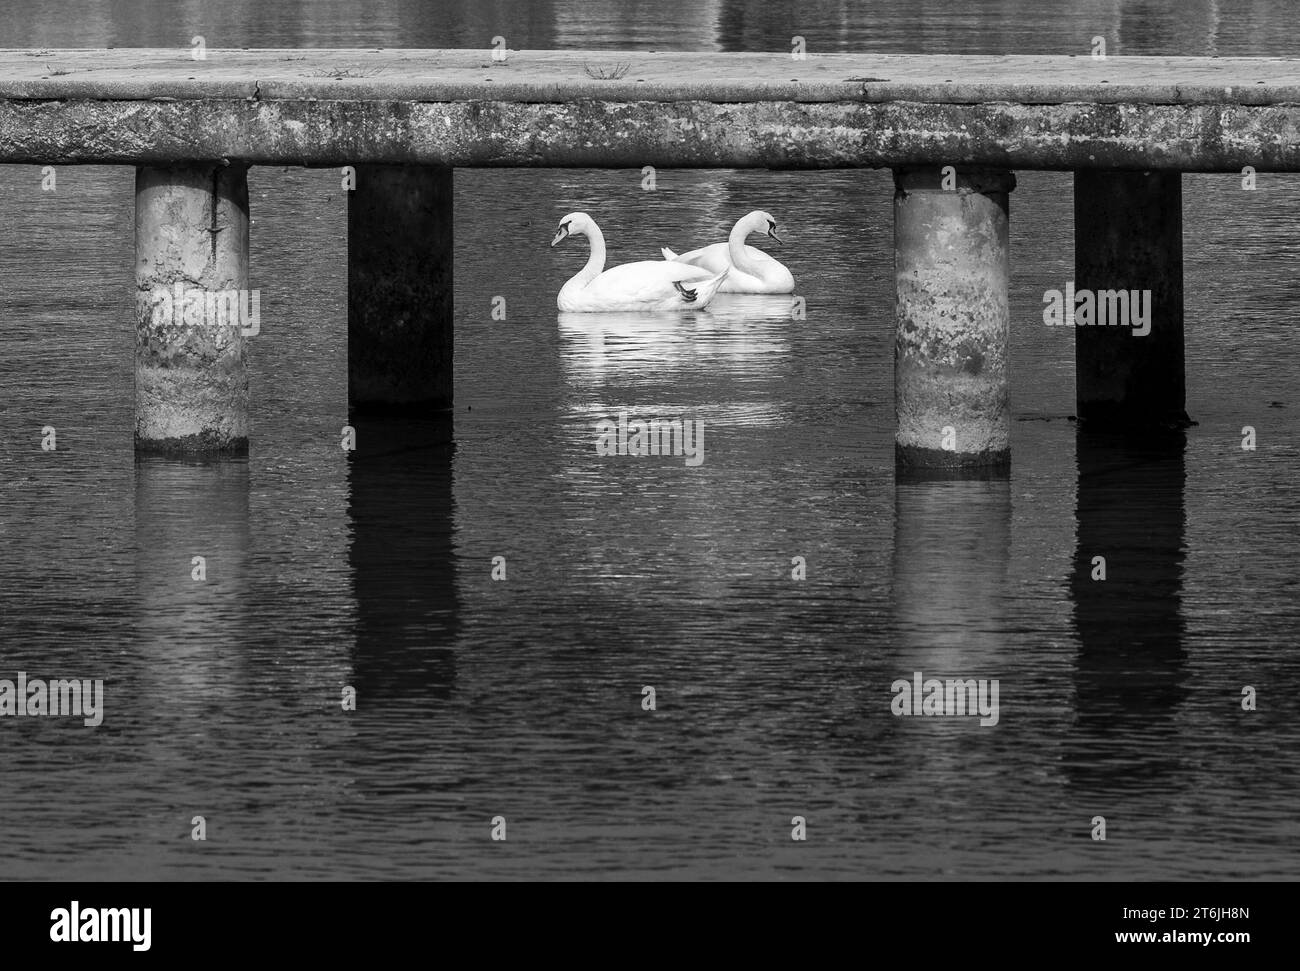 Zwei weiße Schwäne, anmutige Vögel unter der Betonbrücke schwimmen im Ohridsee Mazedonien. Schwarzweiß, Schwarzweiß. Stockfoto